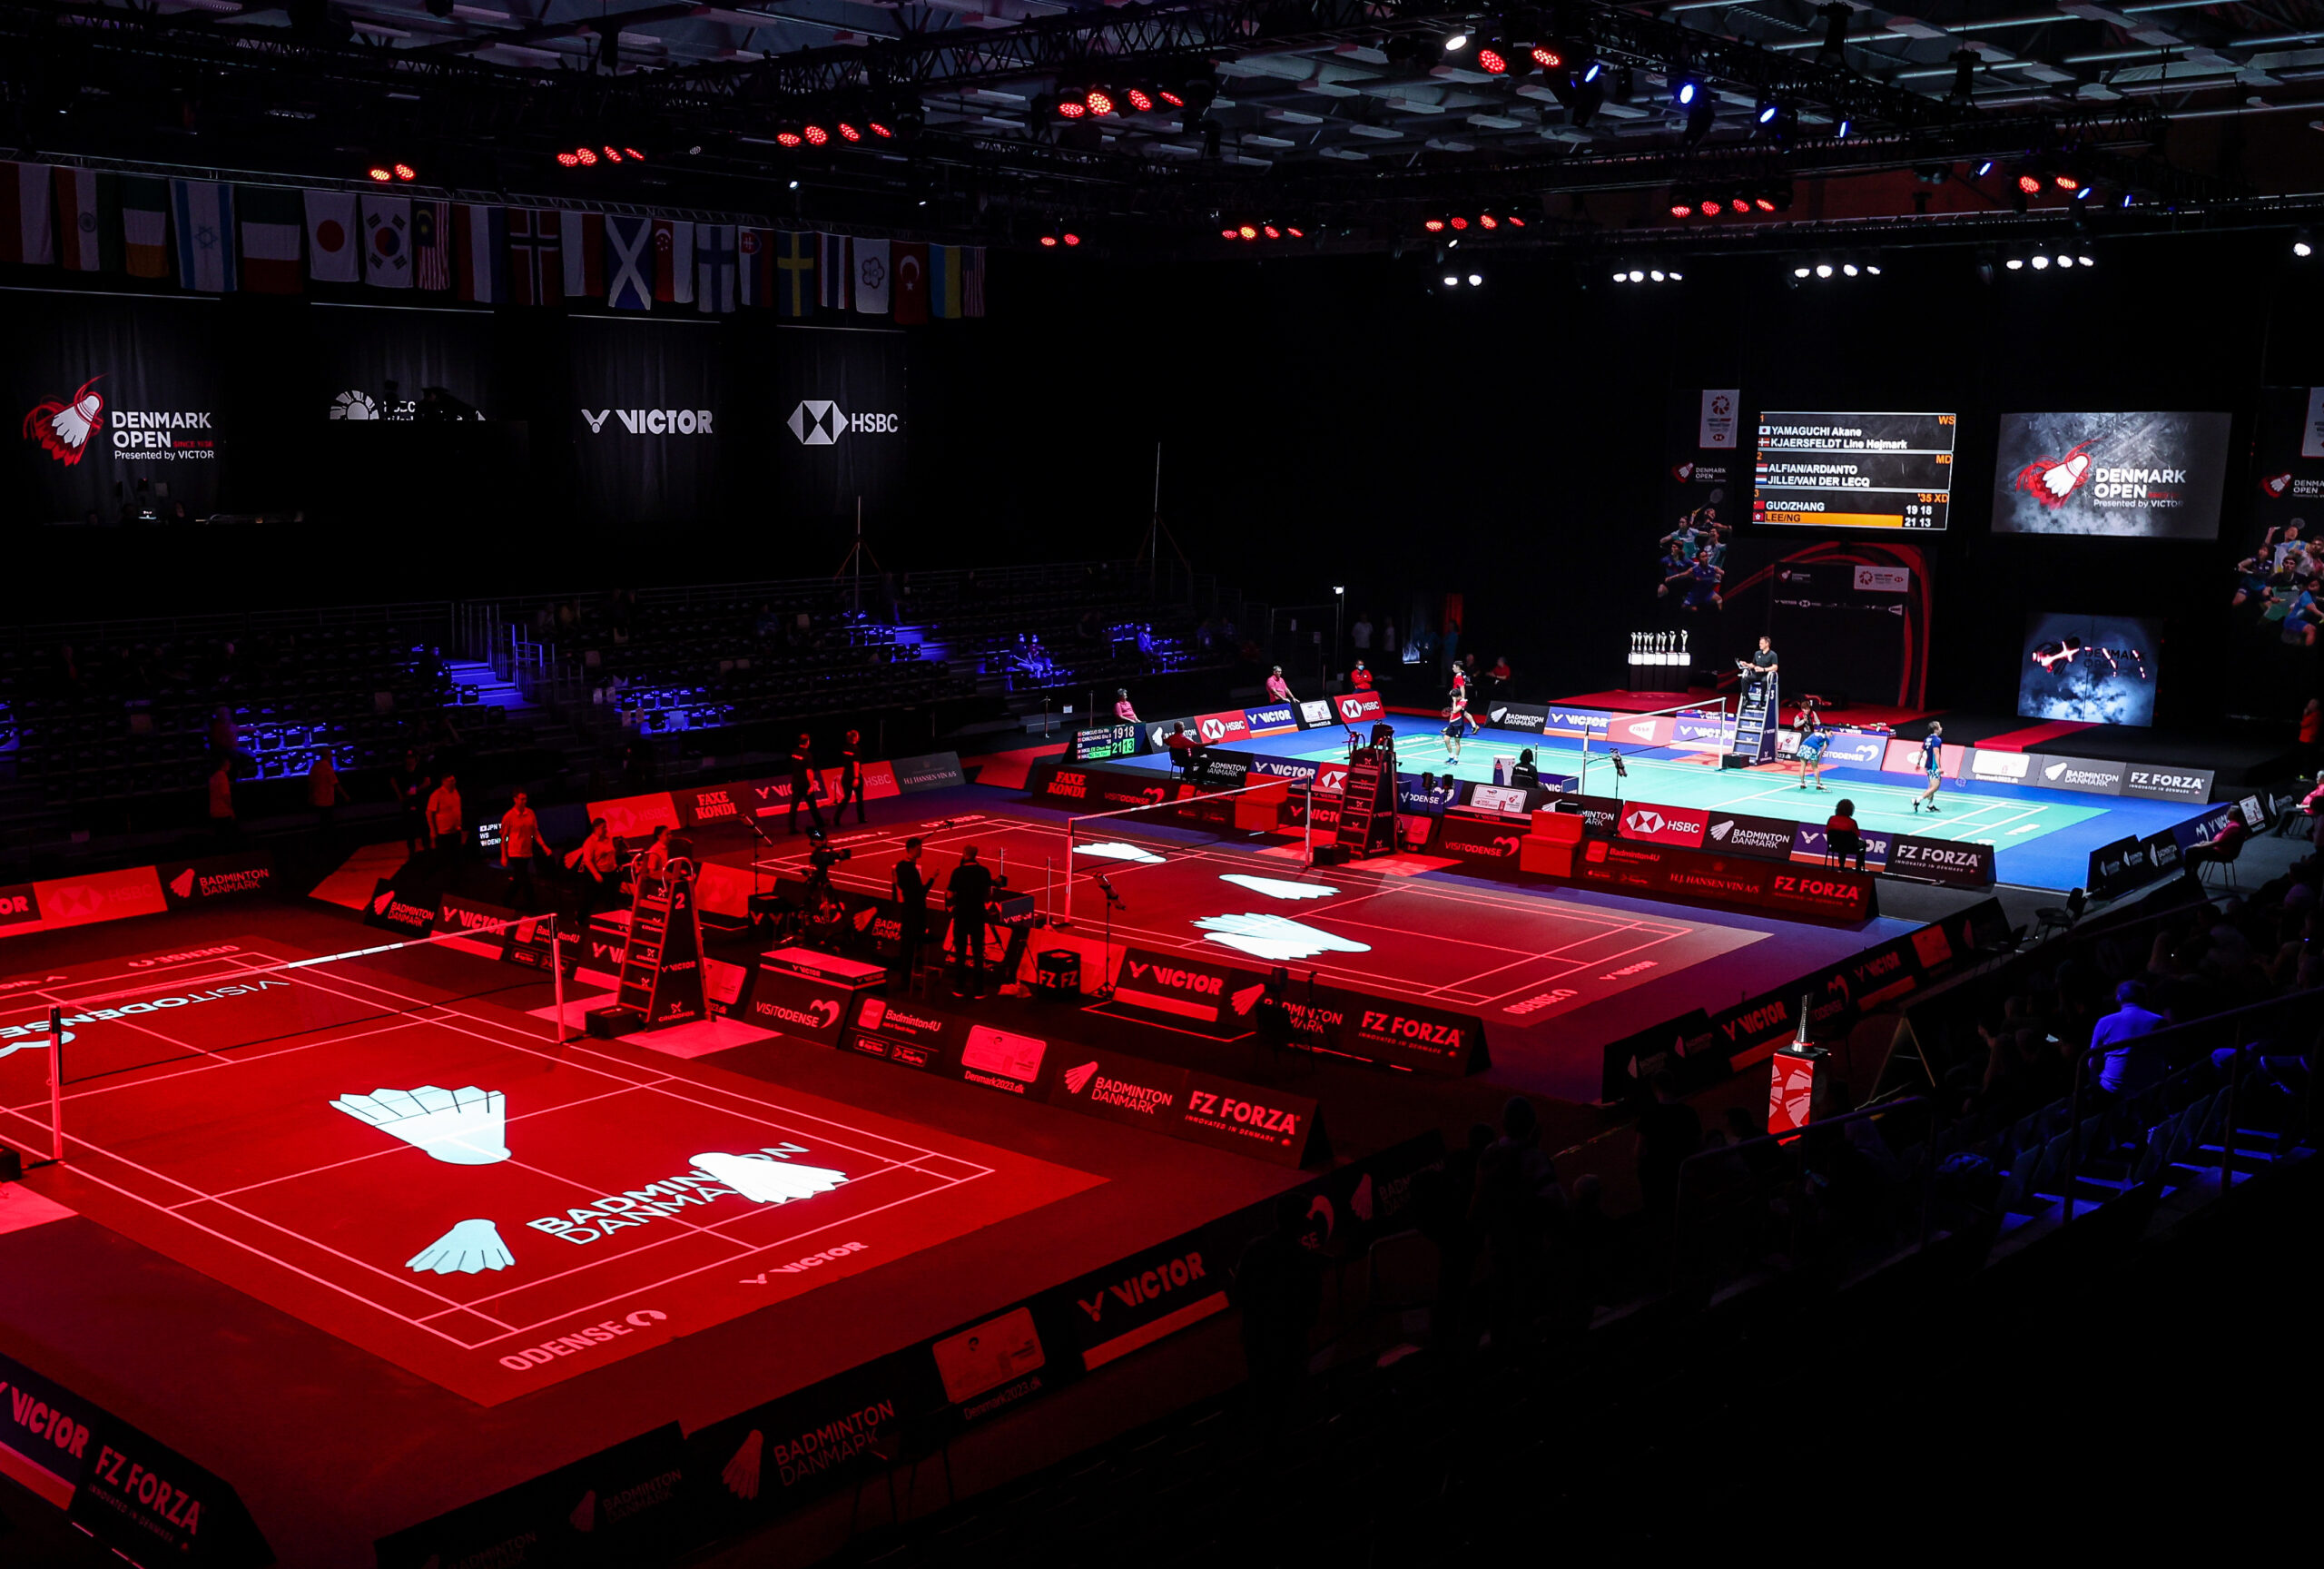 Event Badminton Danmark